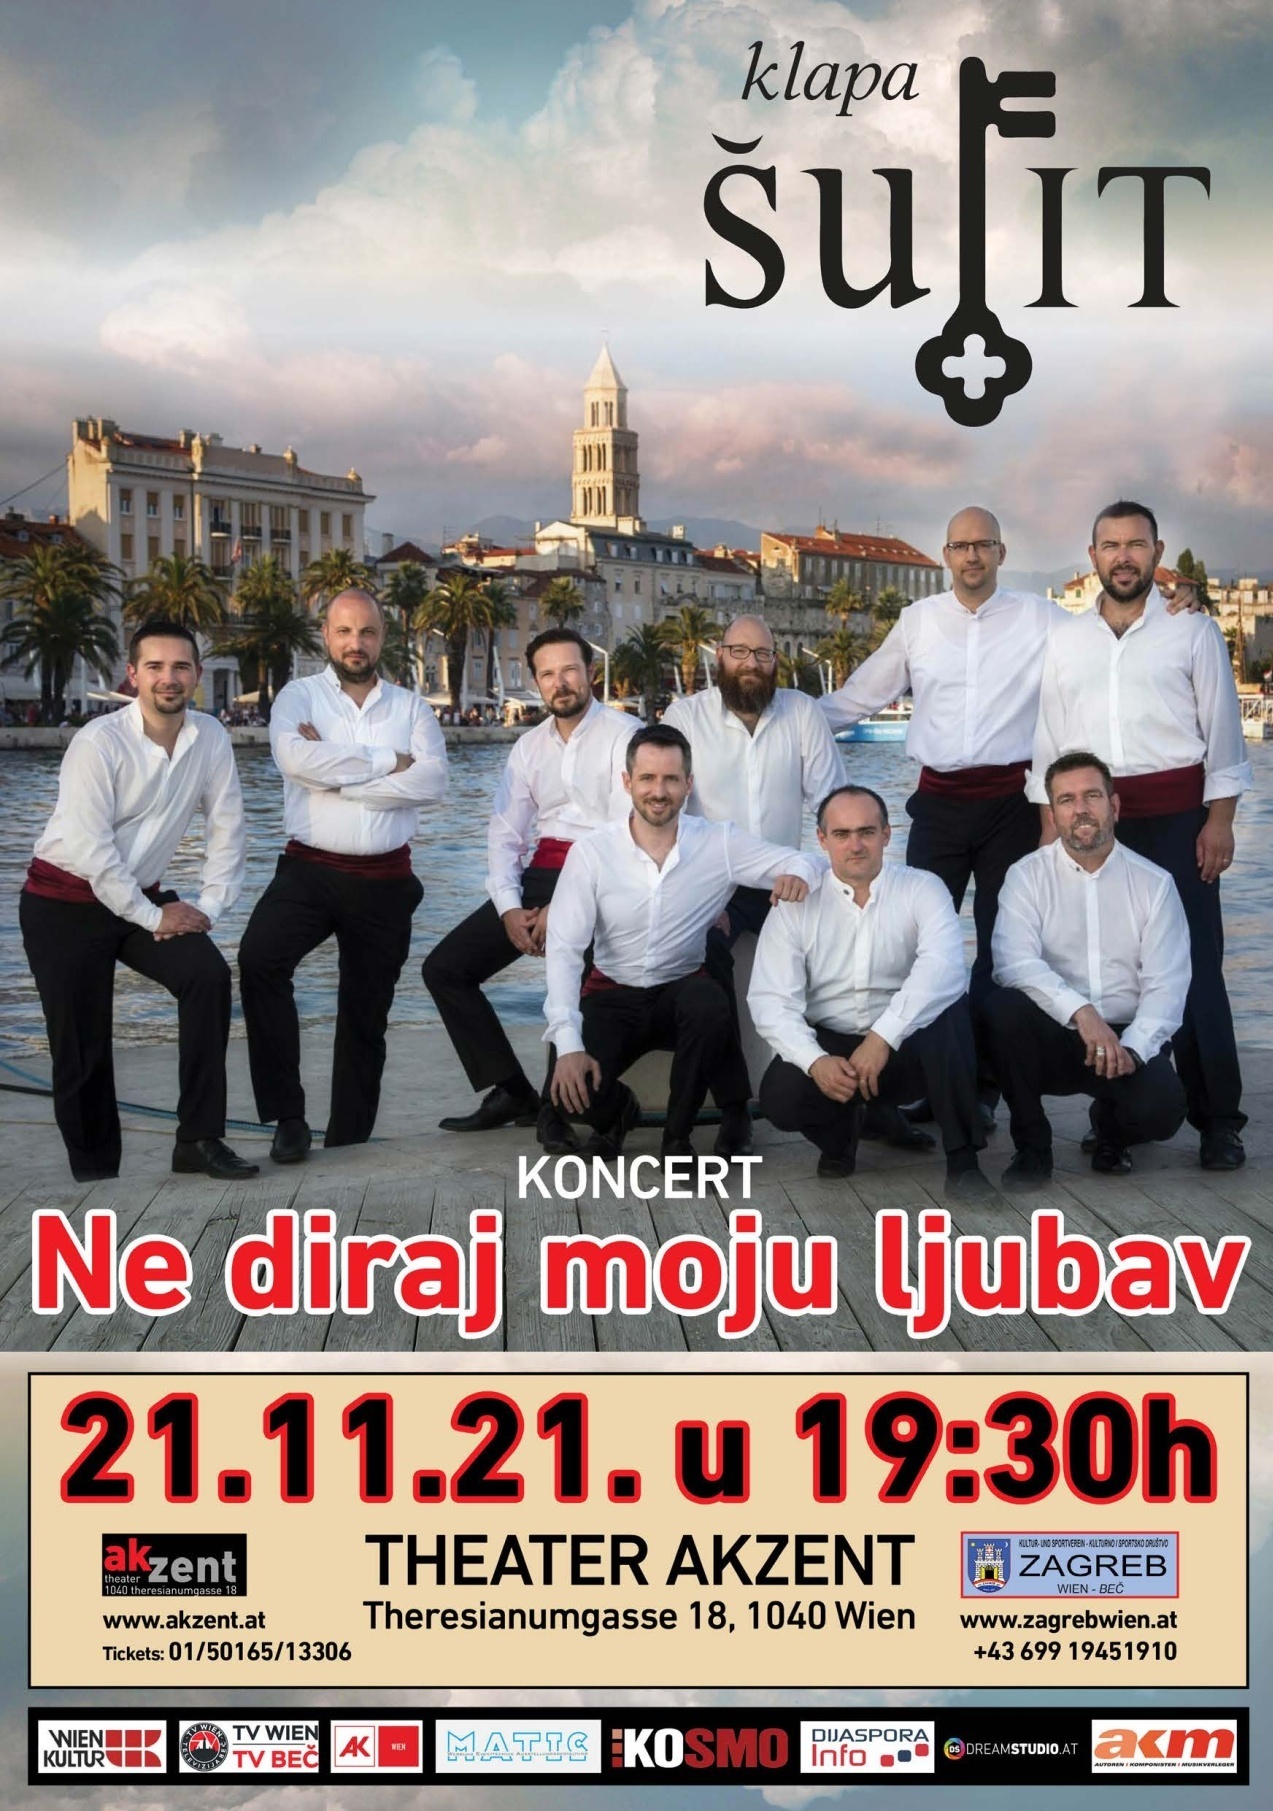 Koncert “Ne diraj moju ljubav”  klape ŠUFIT” 21.11.2021 kazalište Akzent 19.30